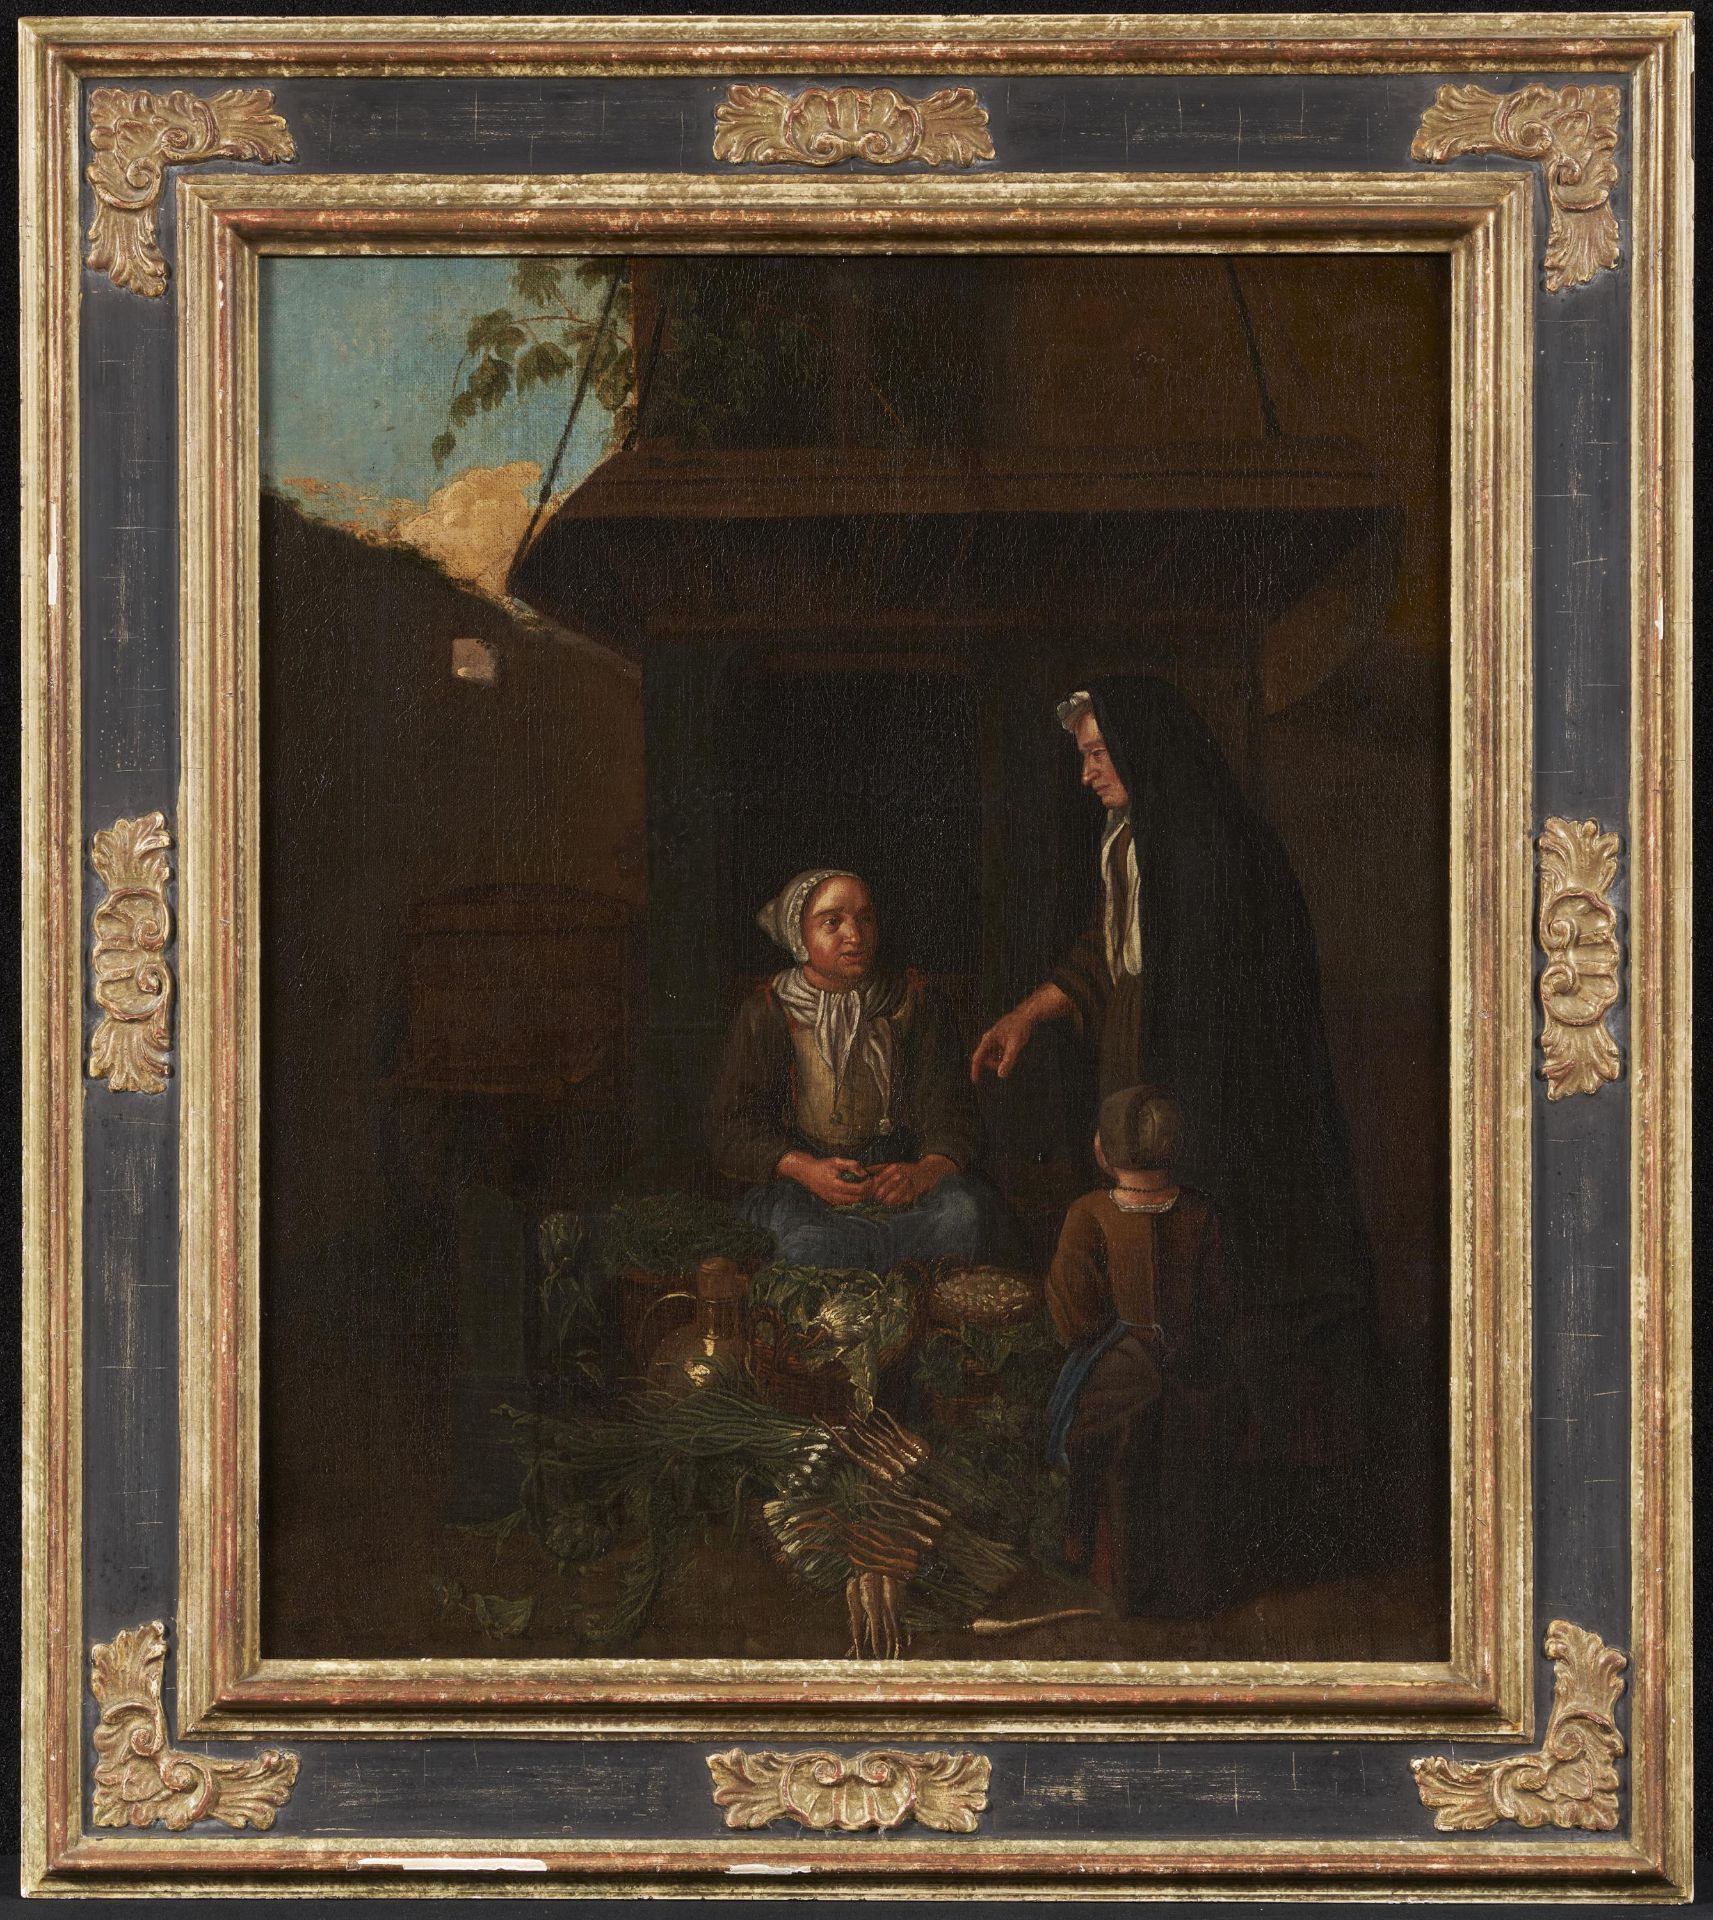 Horemans, Jan Josef d.Ä Antwerpen 1682 - 1759. Nachfolge. Die Gemüsehändlerin. Öl auf Leinwand. - Bild 2 aus 4